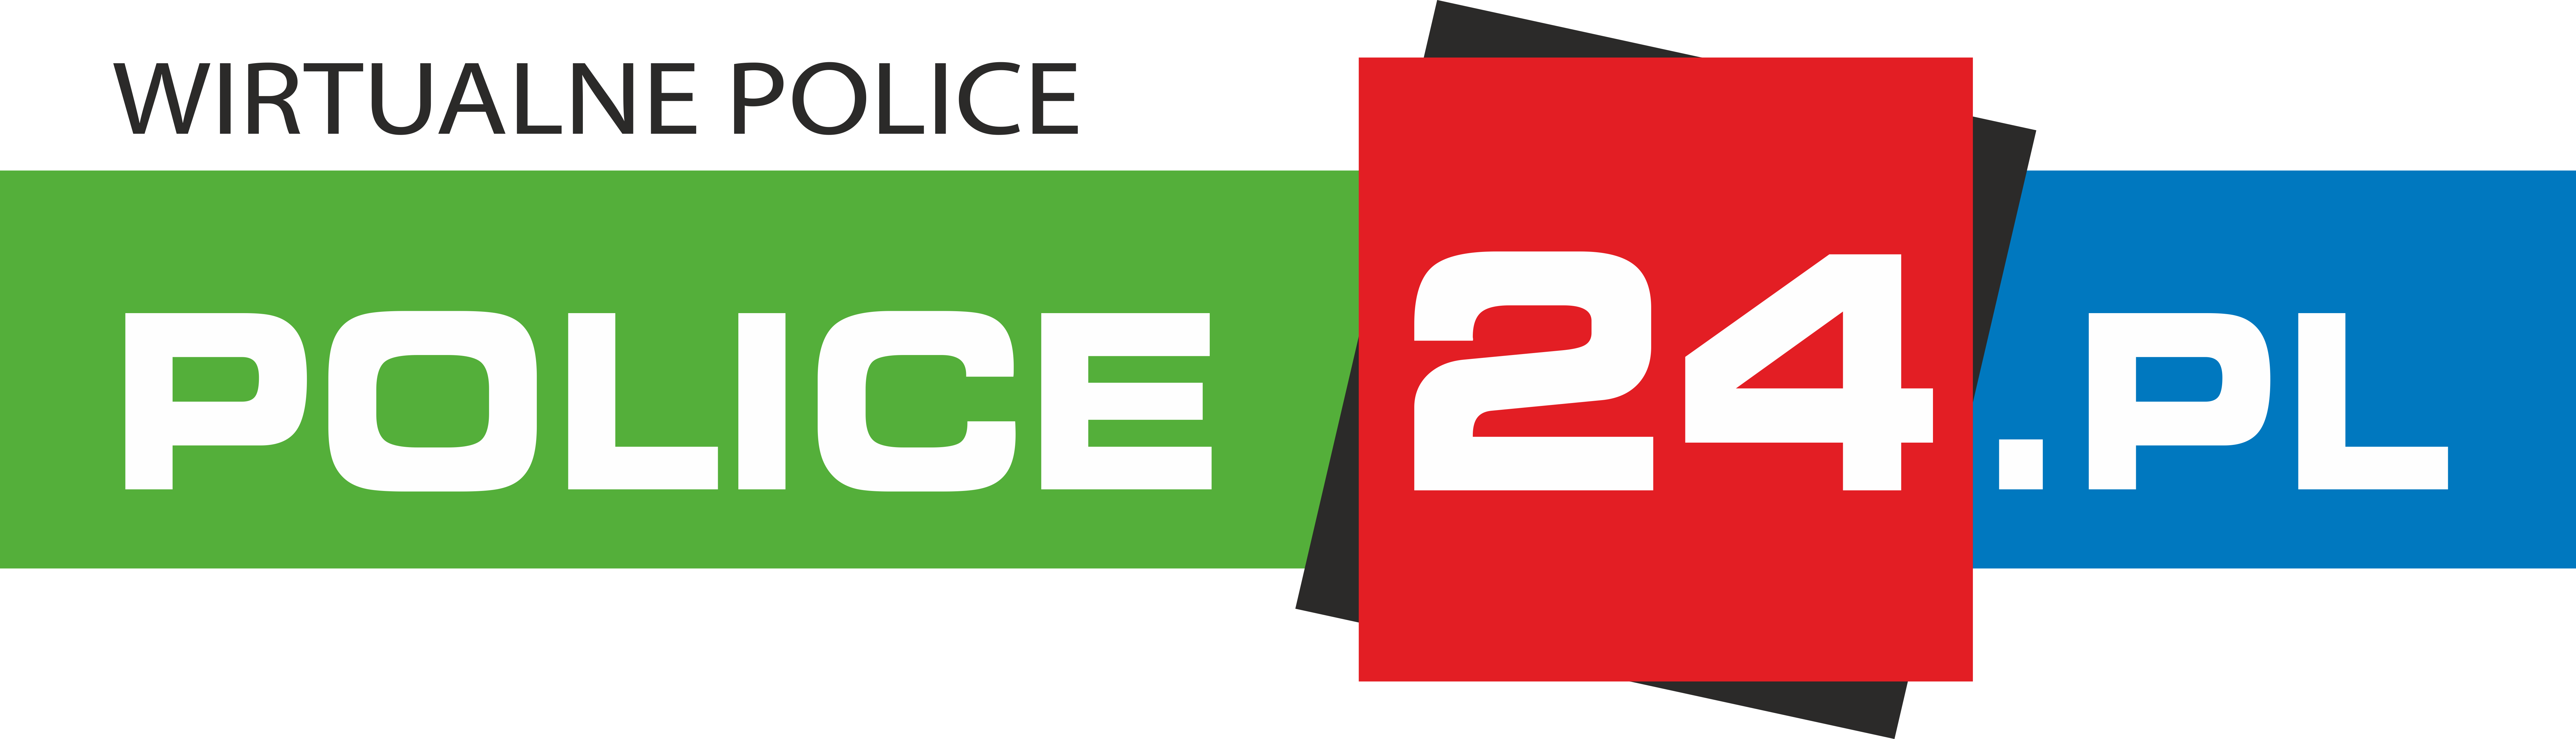 WIRTUALNE POLICE - police24.pl